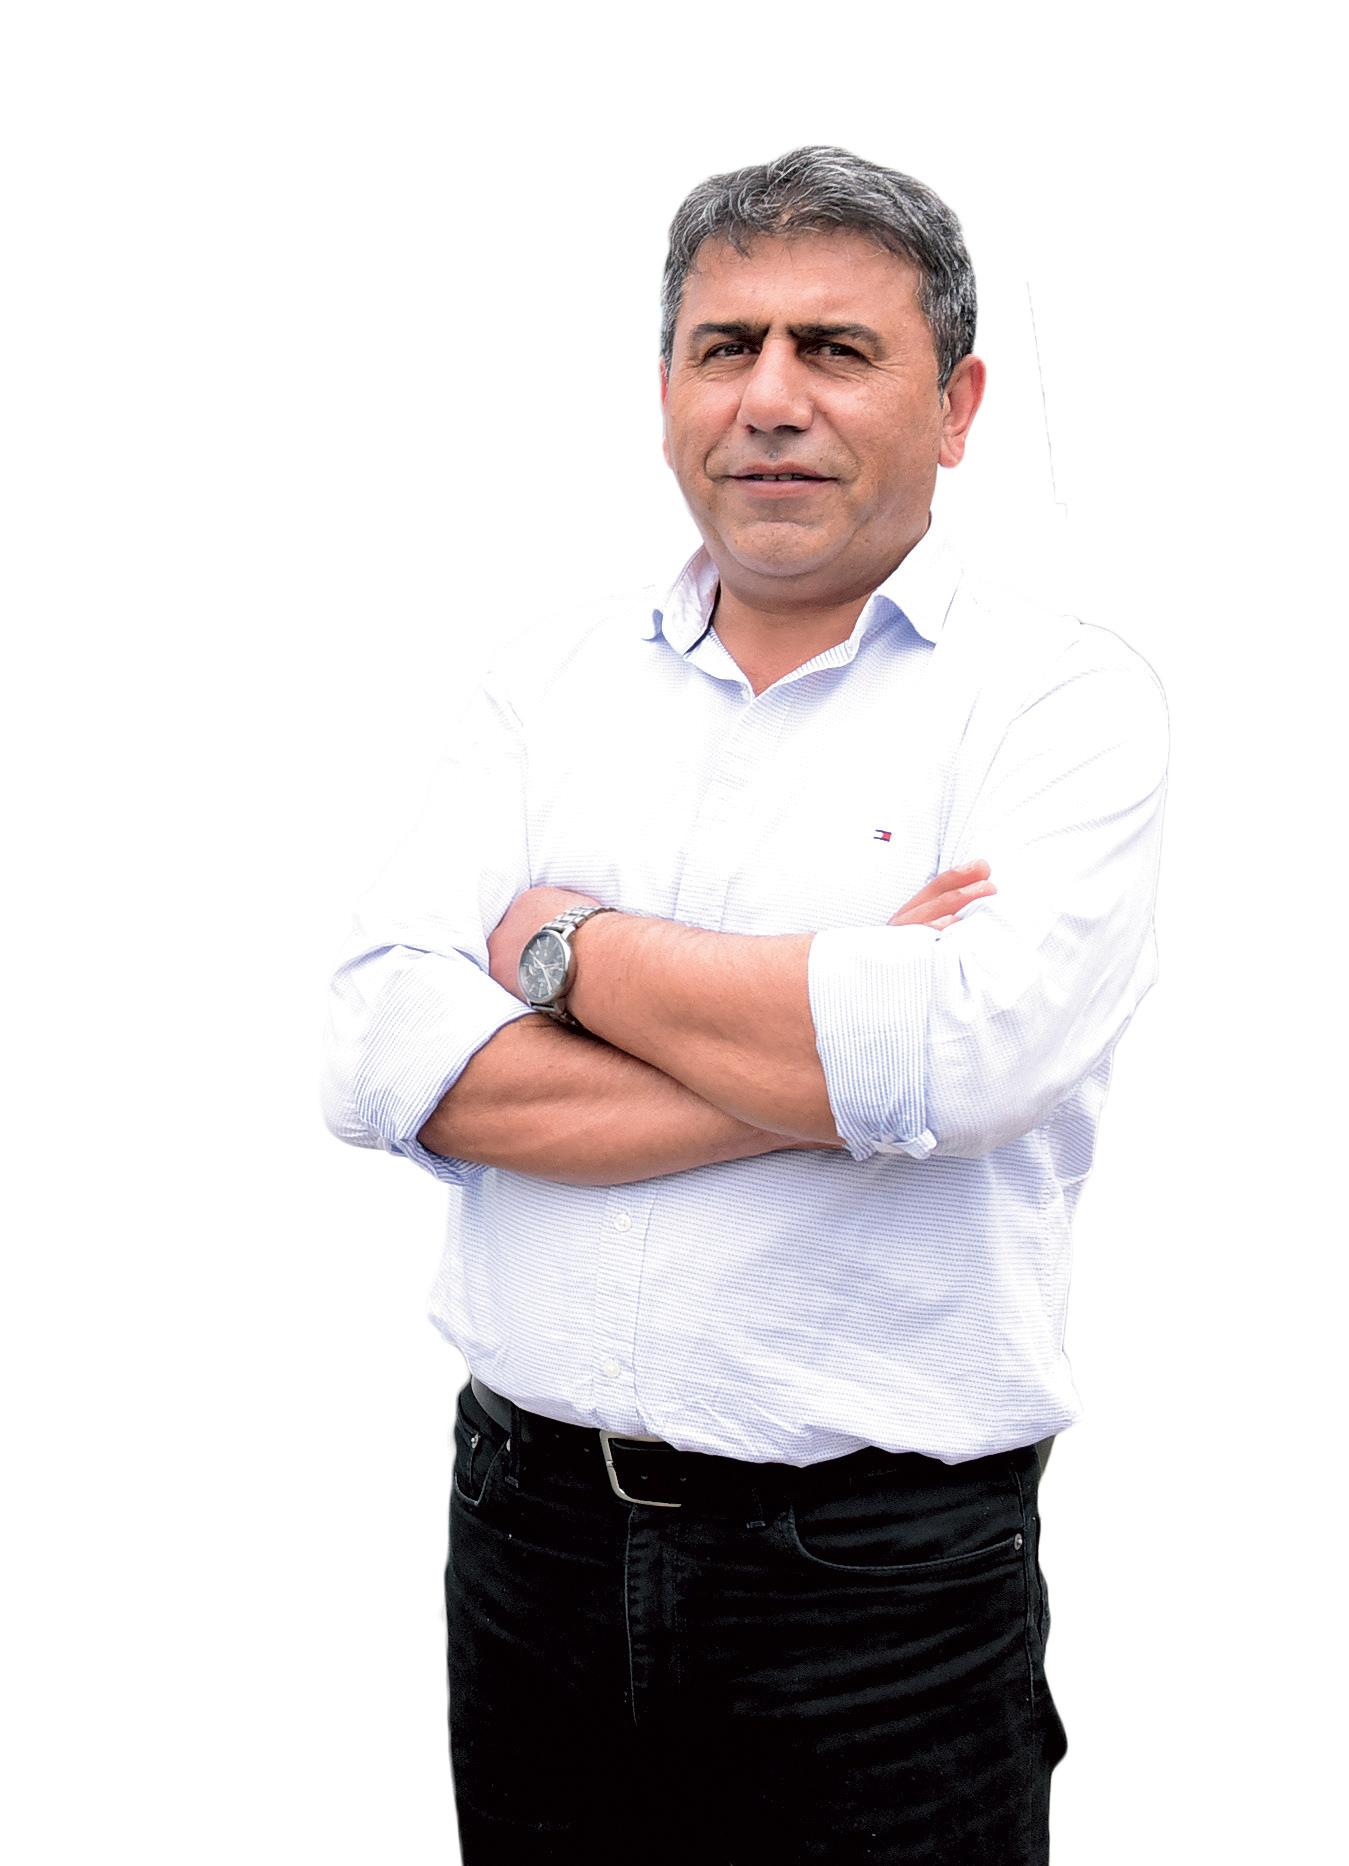 Ali Derman Sezer, Derman Kebap Produktions AG – CEO